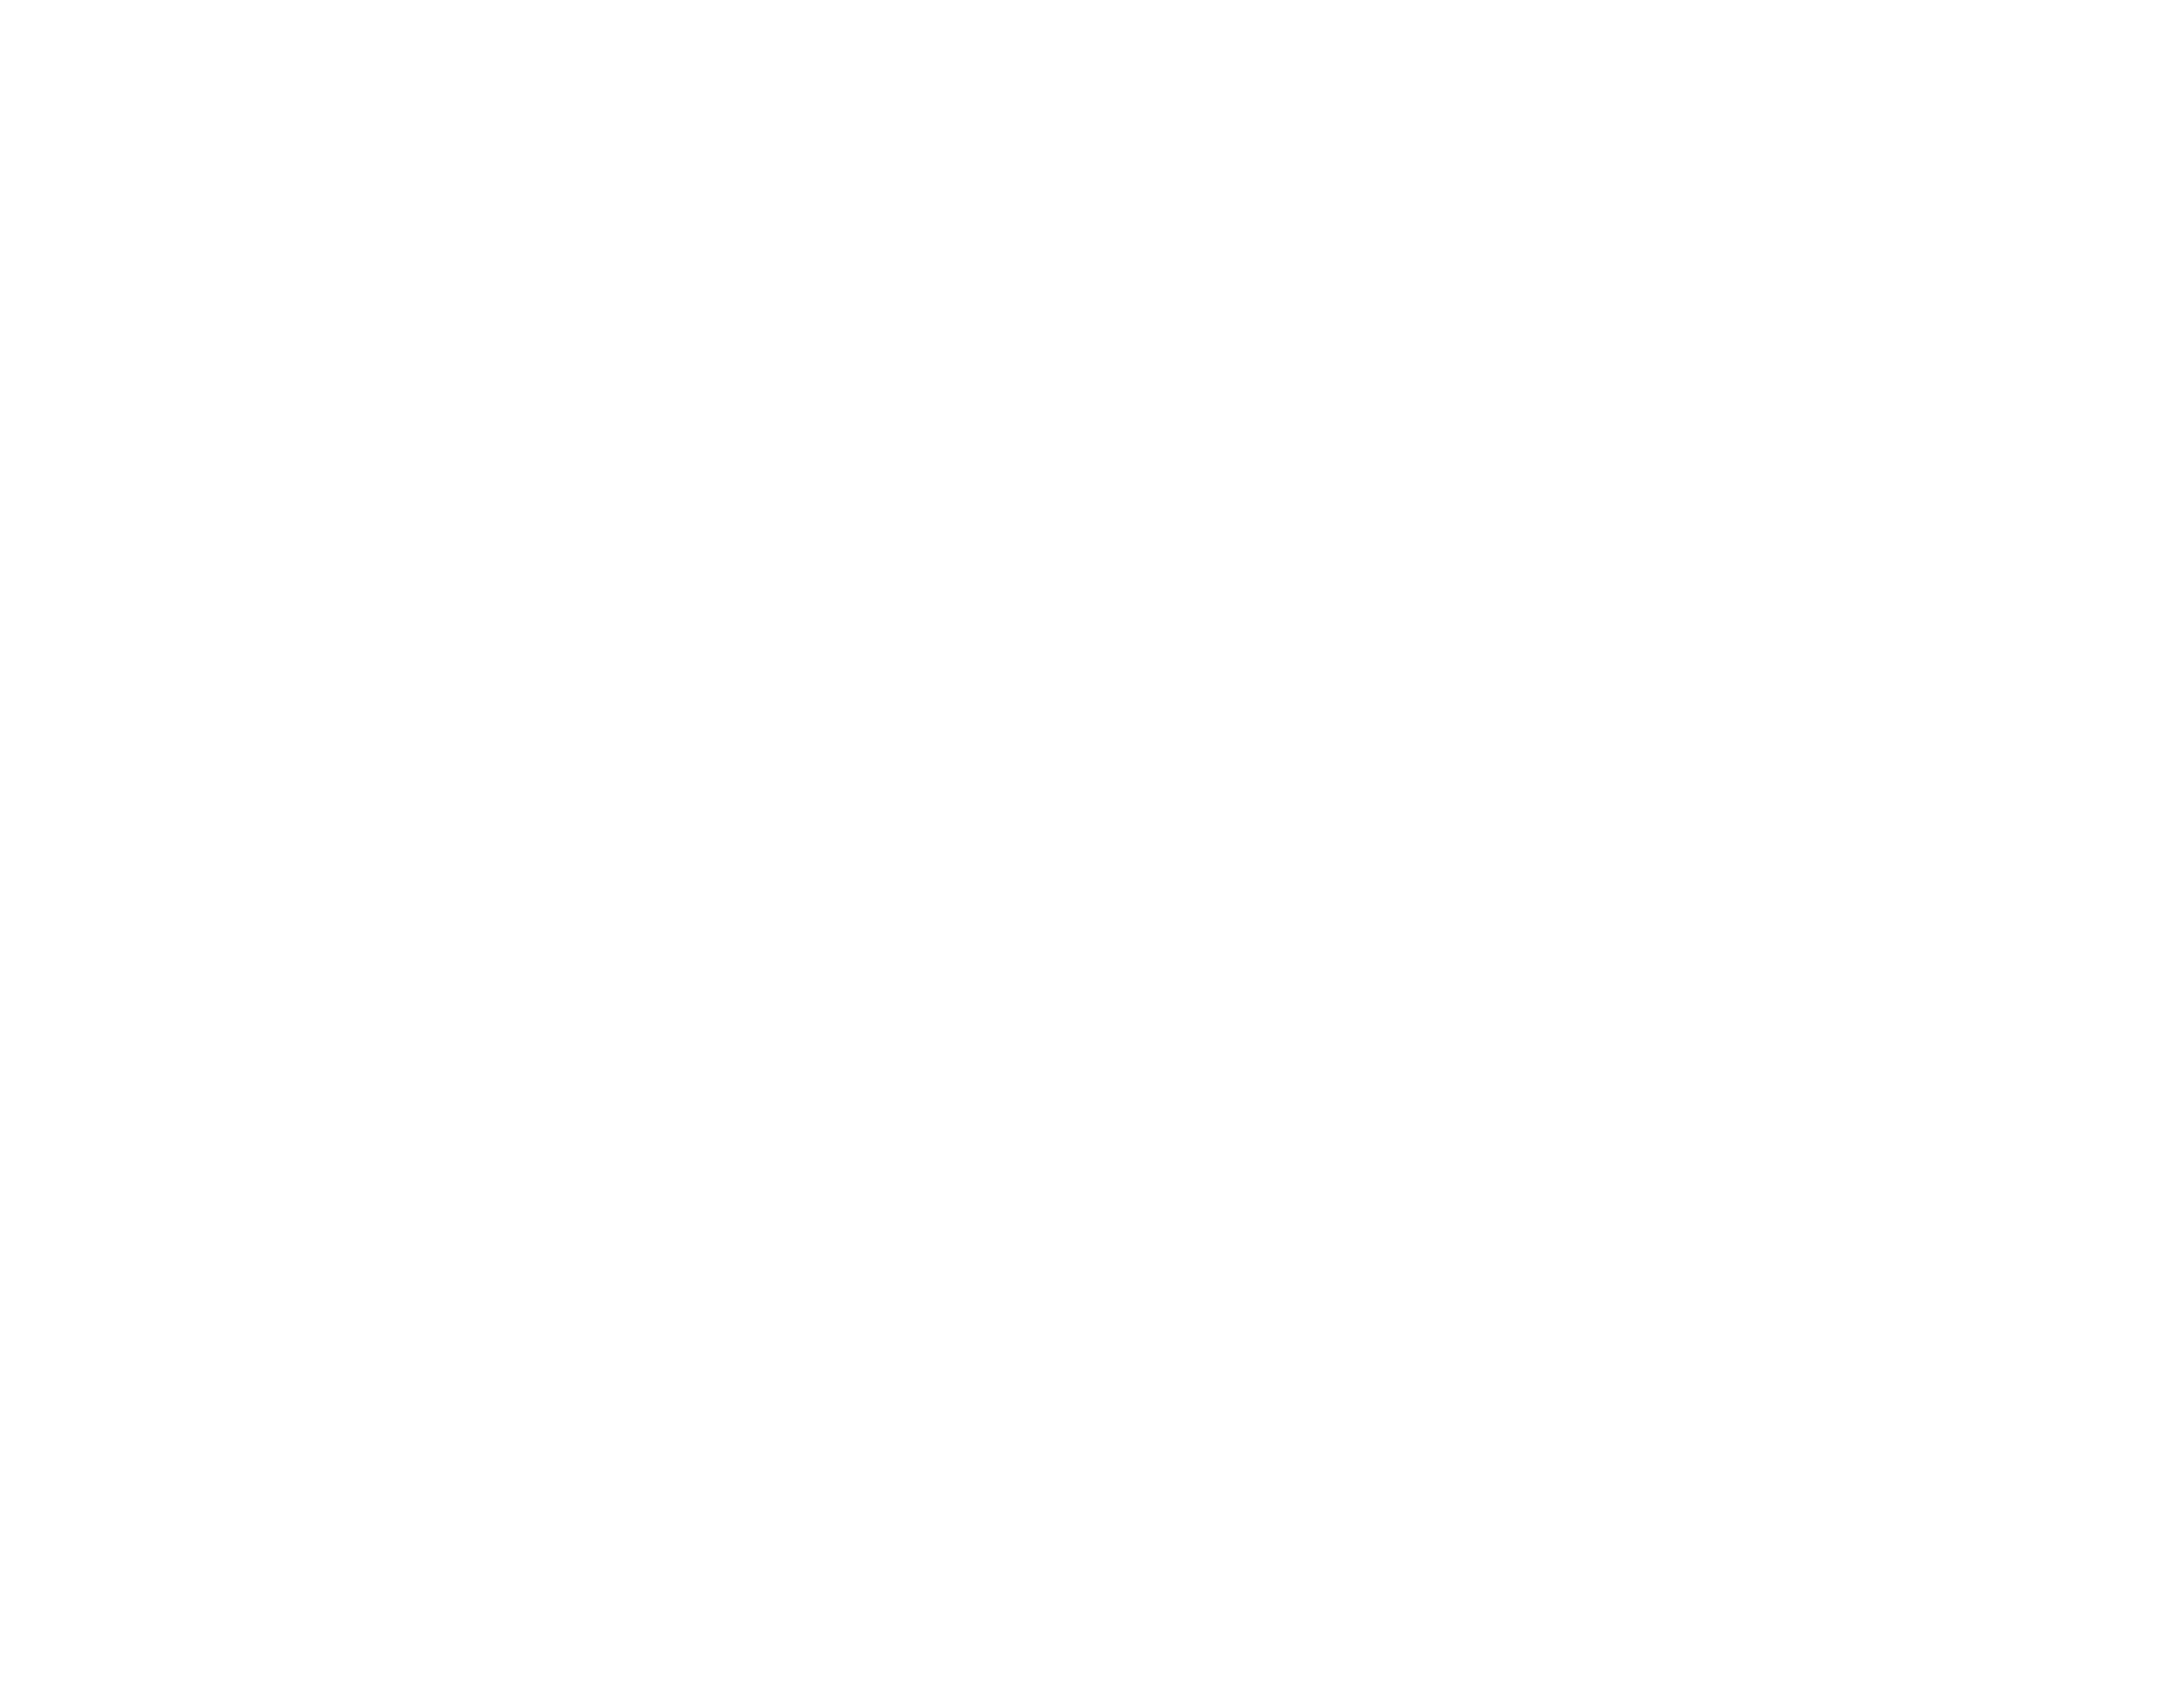 LLC : Life-Long Learning Center